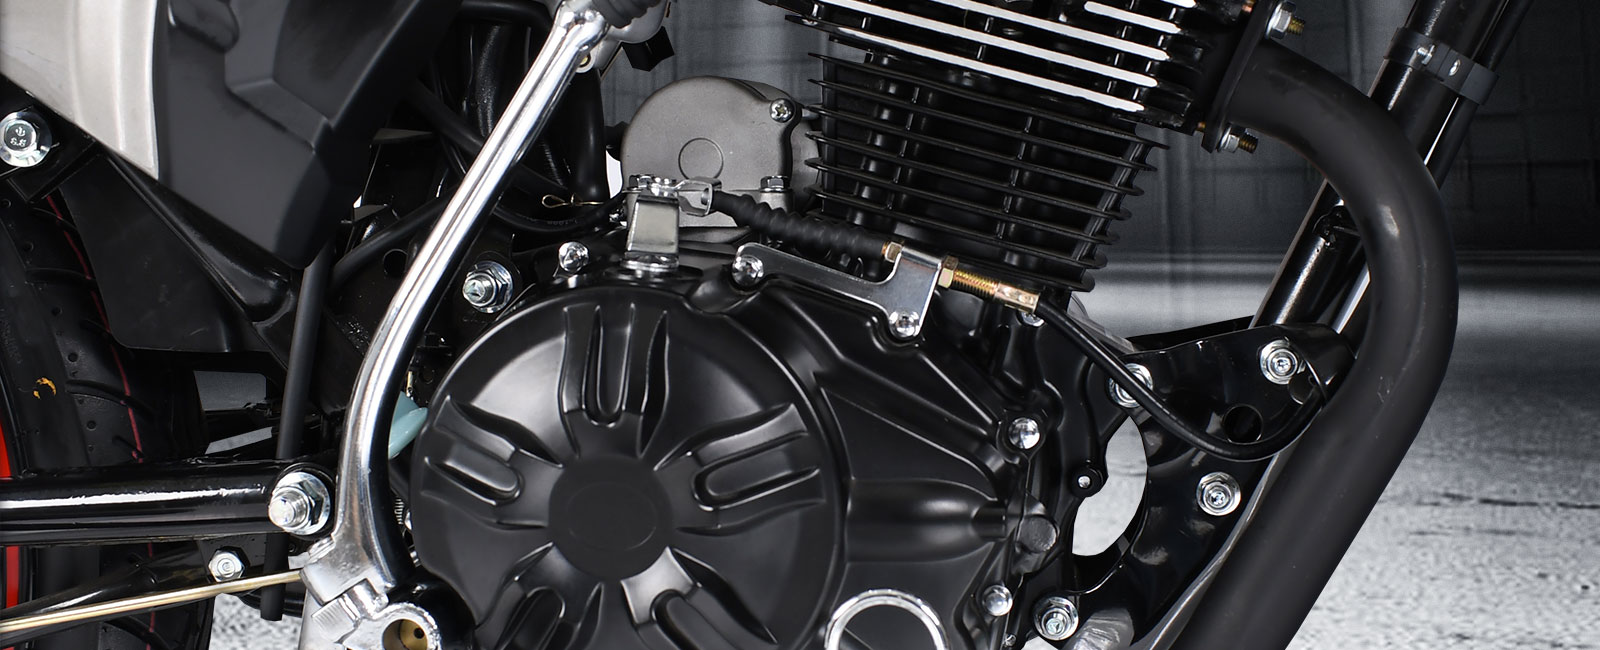 Motor de la Moto utilitaria KINGFOX 150